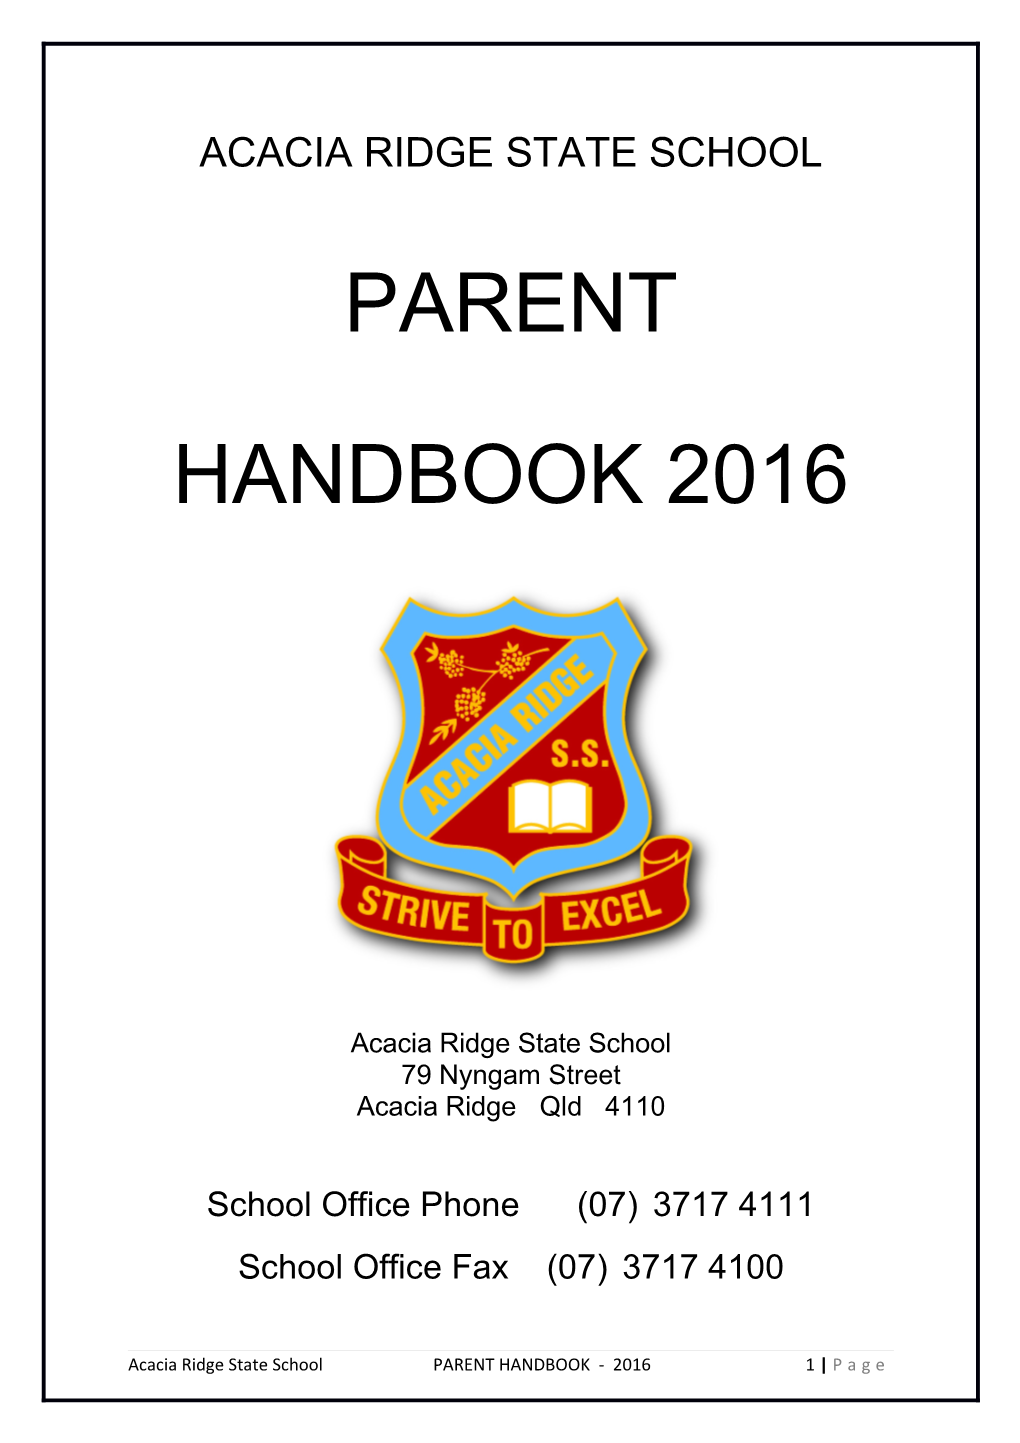 Acacia Ridge State School Parent Handbook 2016